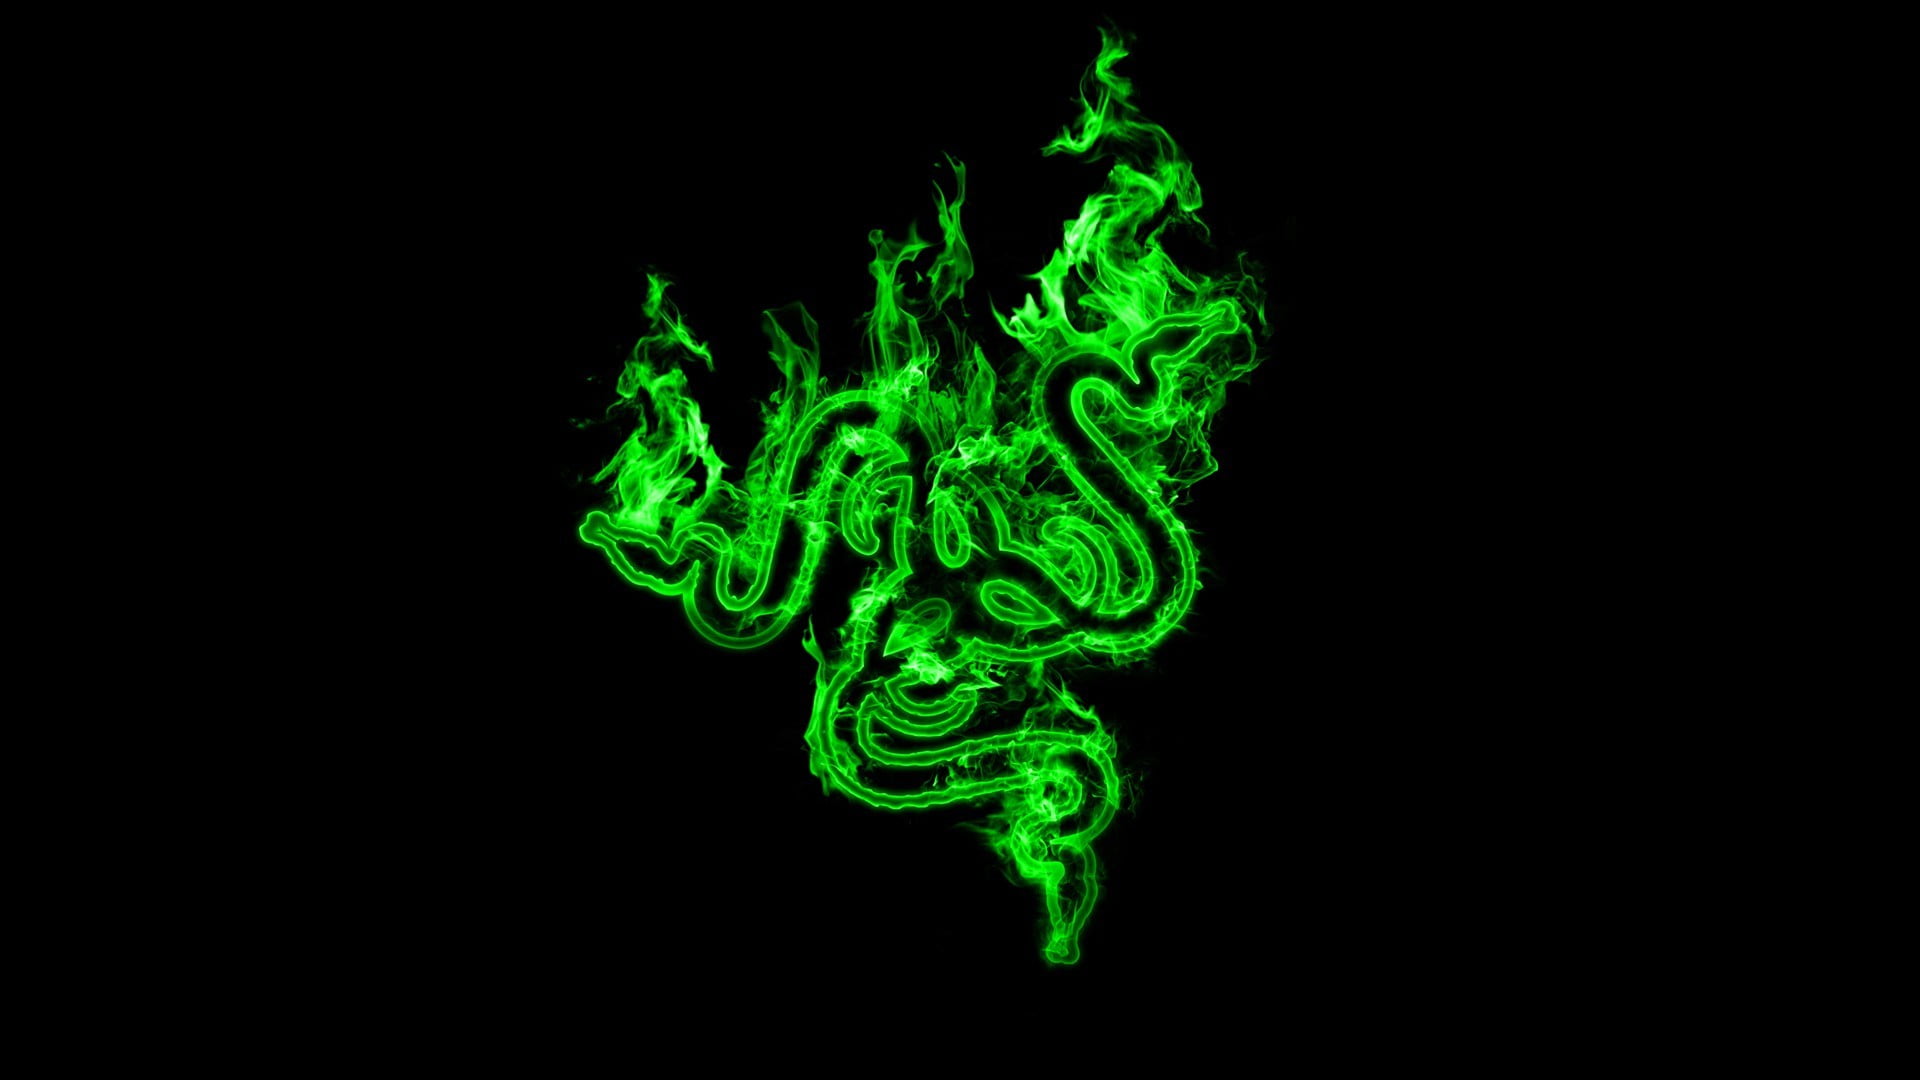 Razer logo, Razer, green, black, black background